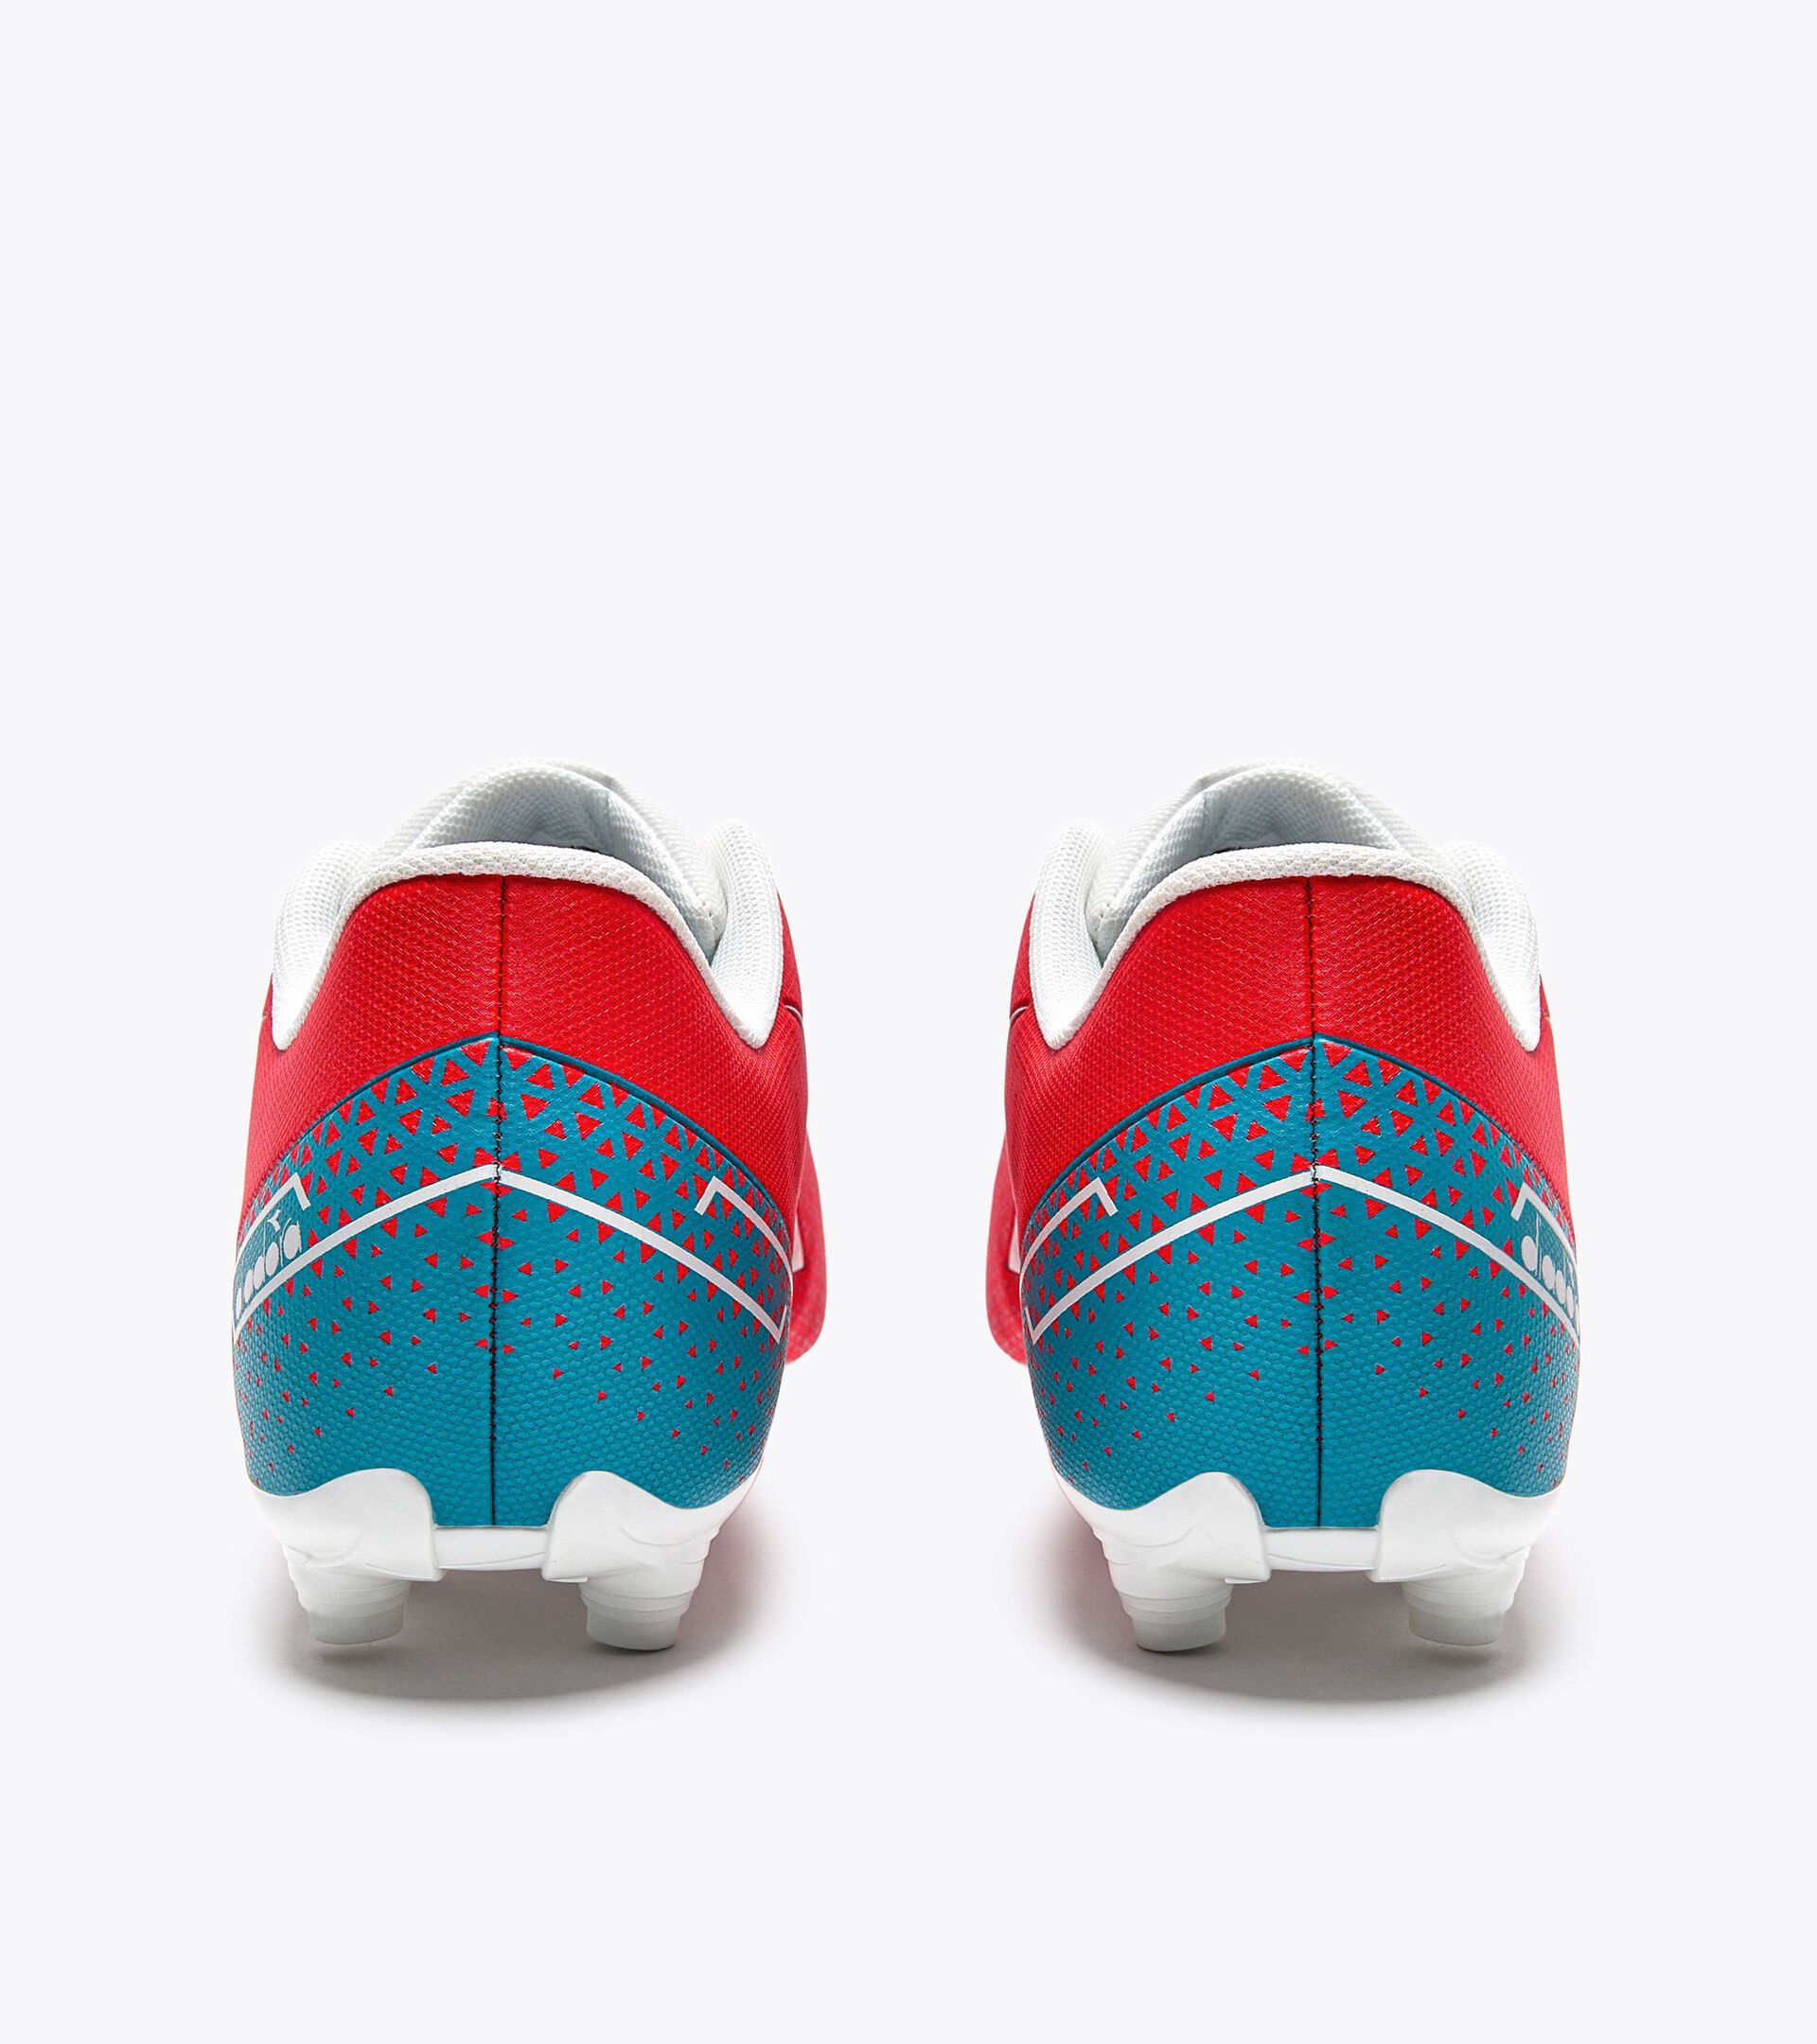 Calcio boots for firm grounds - Men PICHICHI 6 MG14 FLUO RED/VAPOR BLUE/TILE BLUE - Diadora